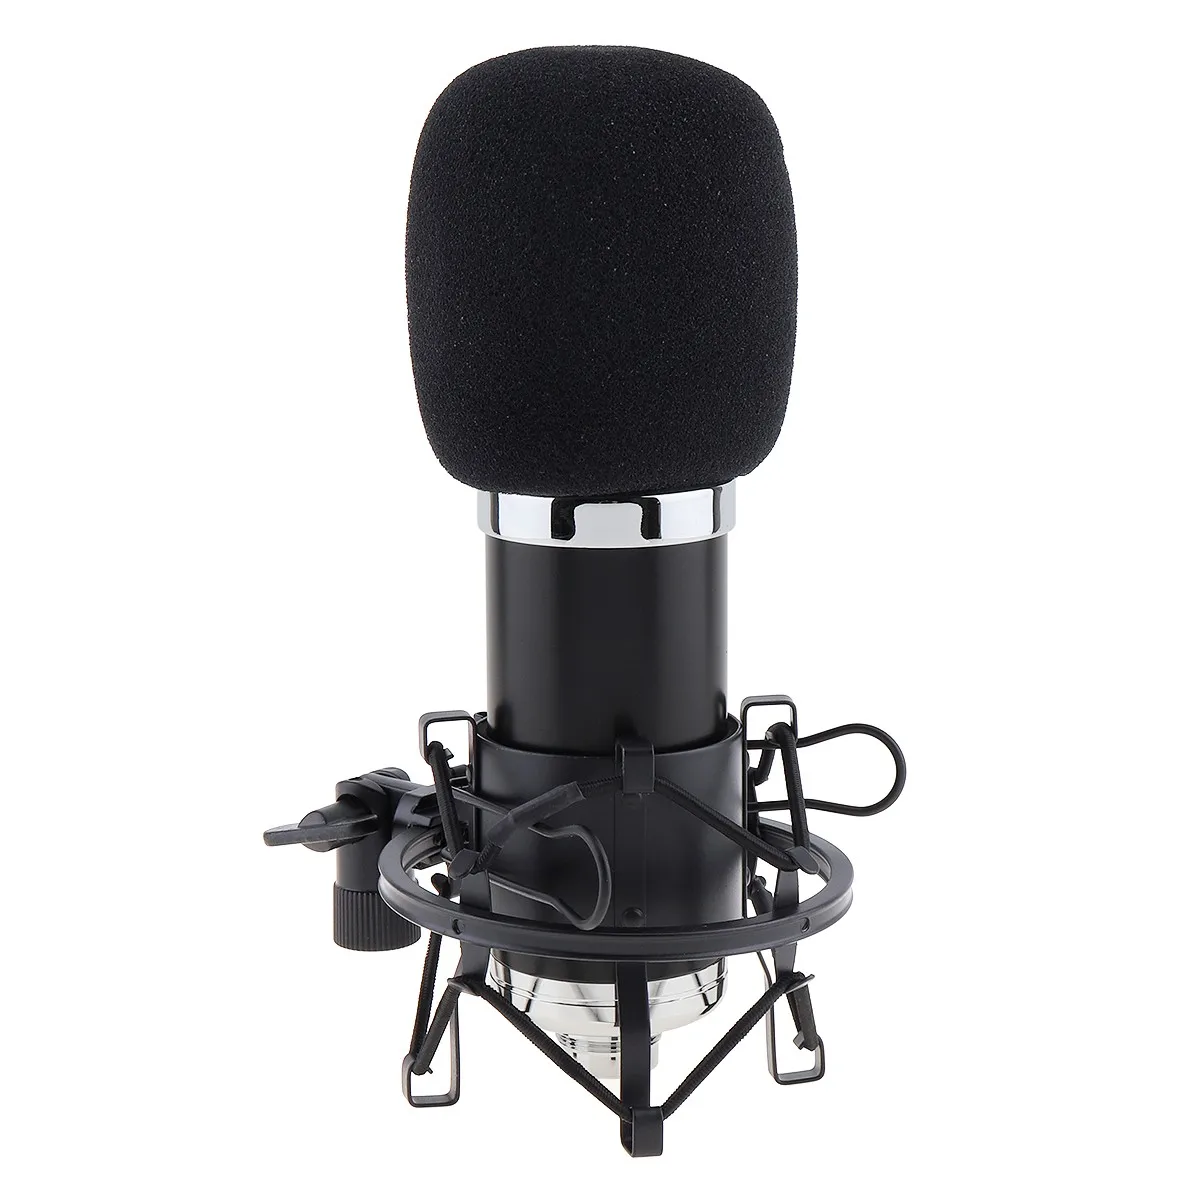 Профессиональный Специальный конденсаторный микрофон BM 5000 с управлением цепи и позолоченной большой головкой диафрагмы для студии/KTV